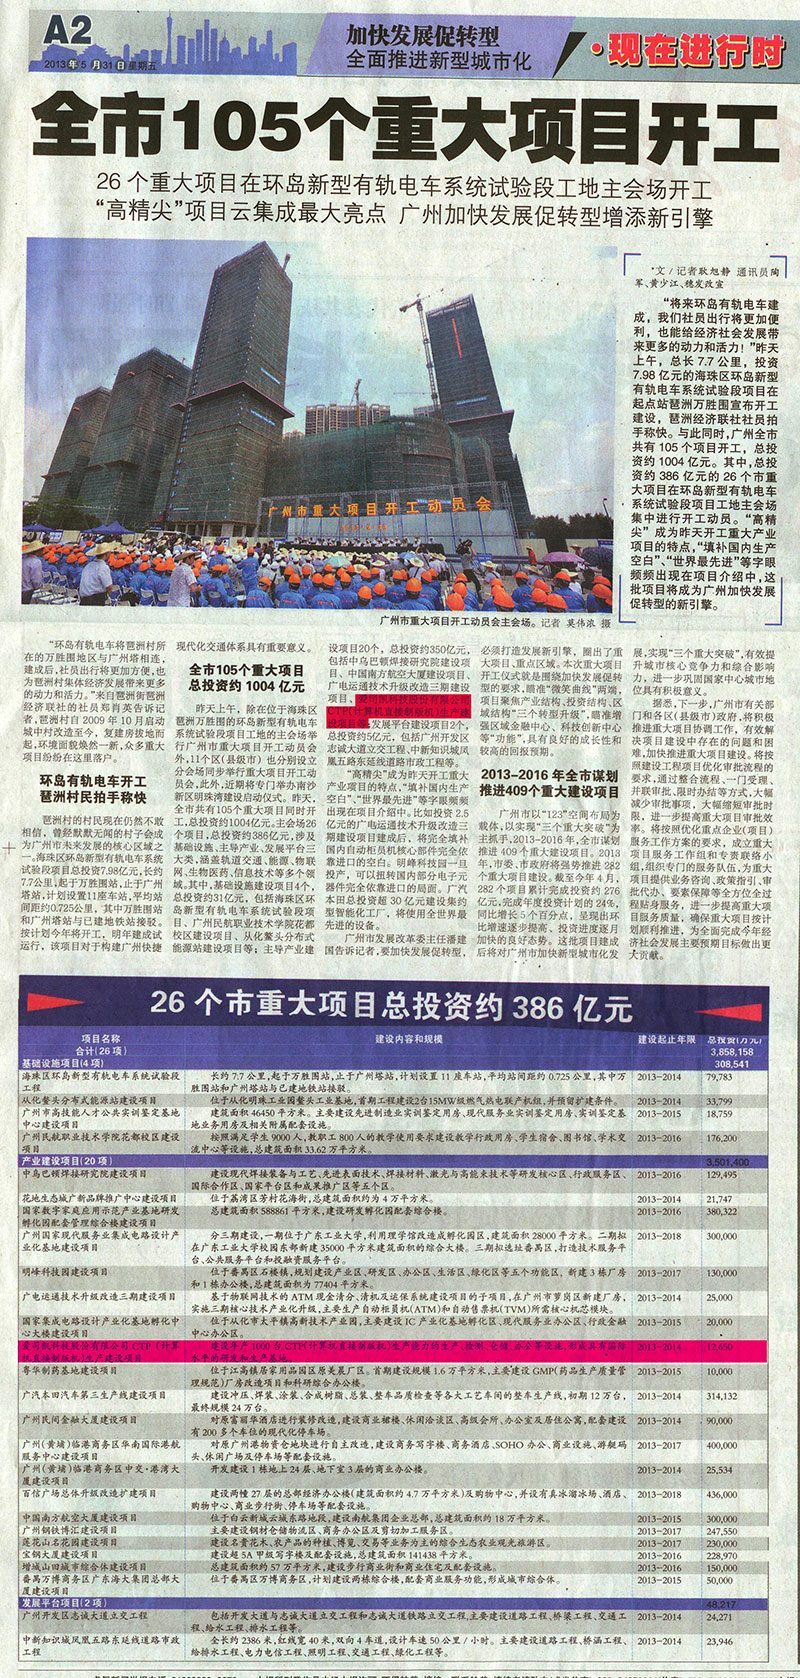 广州日报2013年5月31日A2版报道1.jpg